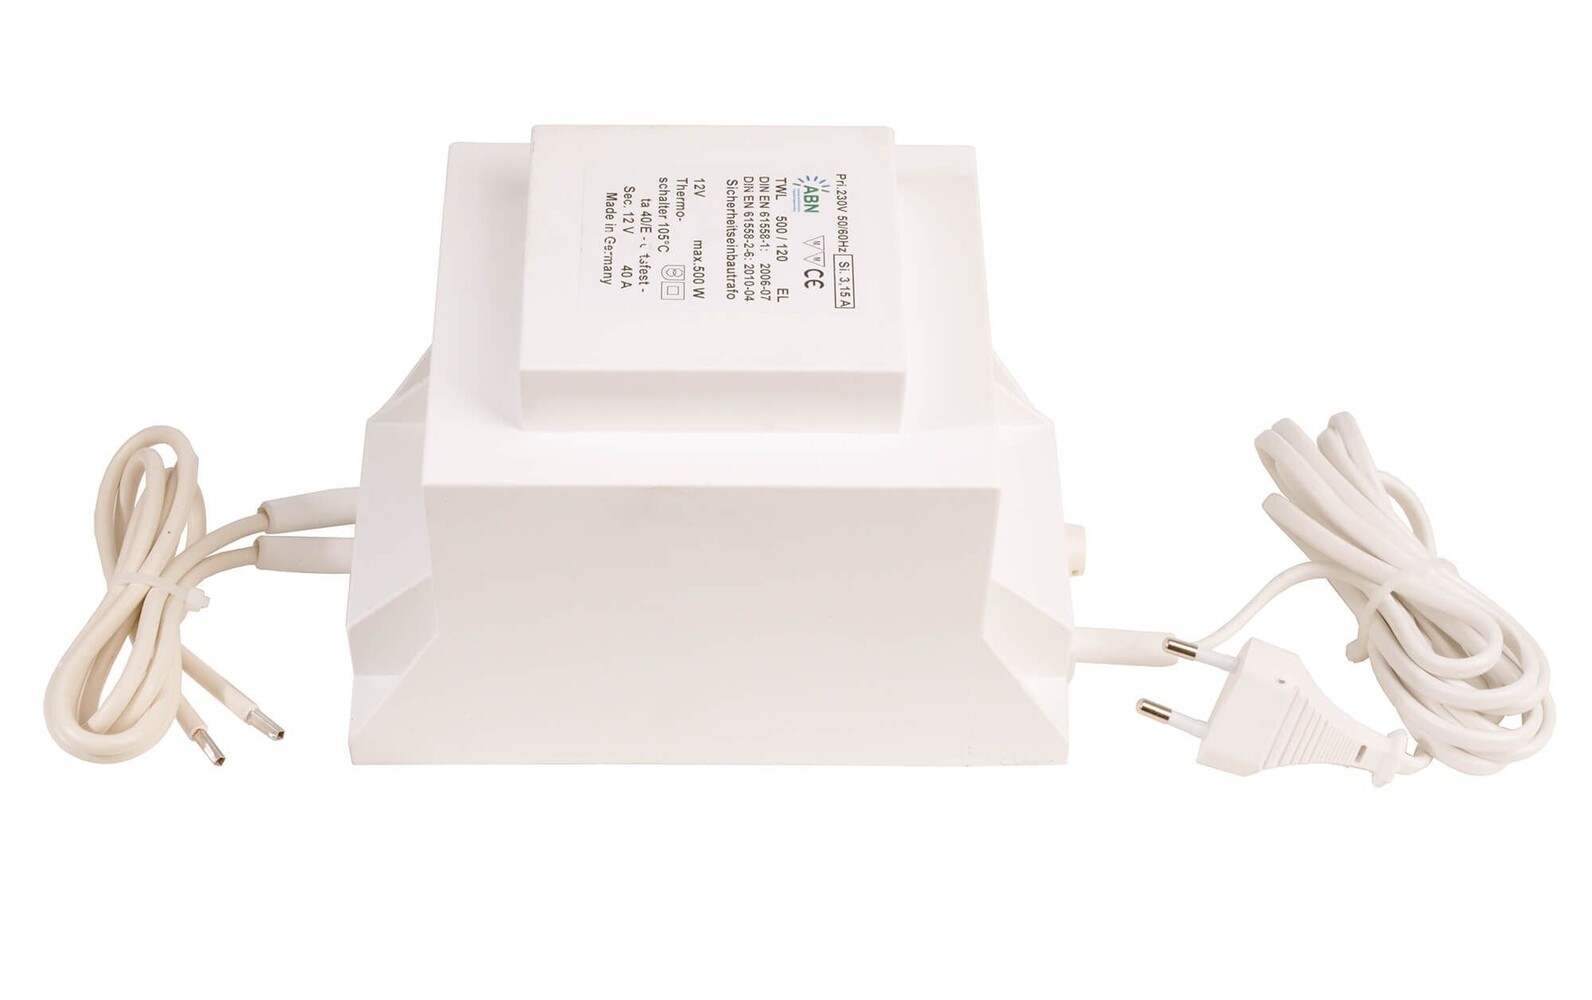 Hochwertiges LED Netzteil der Marke ABN, spannungskonstant und dimmbar mit absoluter Zuverlässigkeit